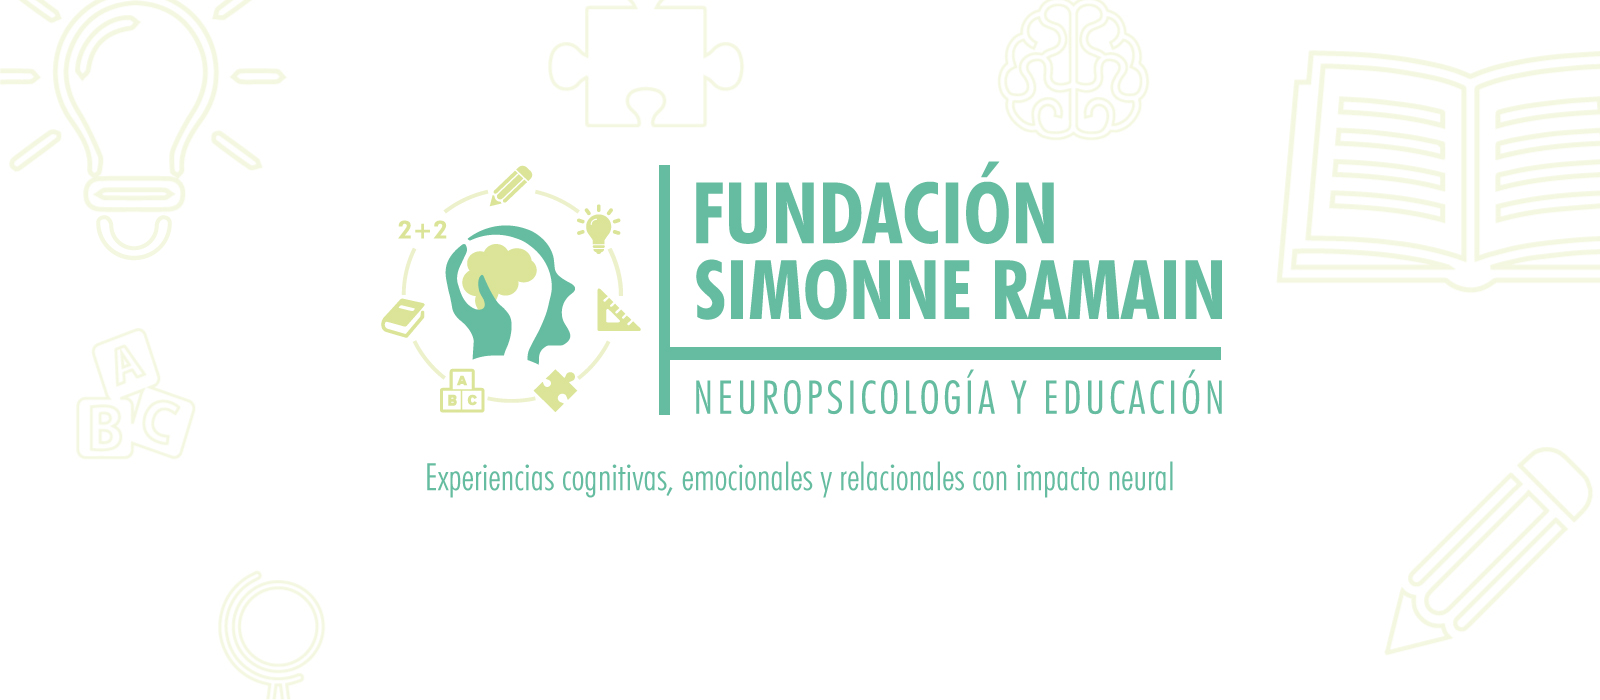 Lanzamiento oficial de fundación Simonne Ramain